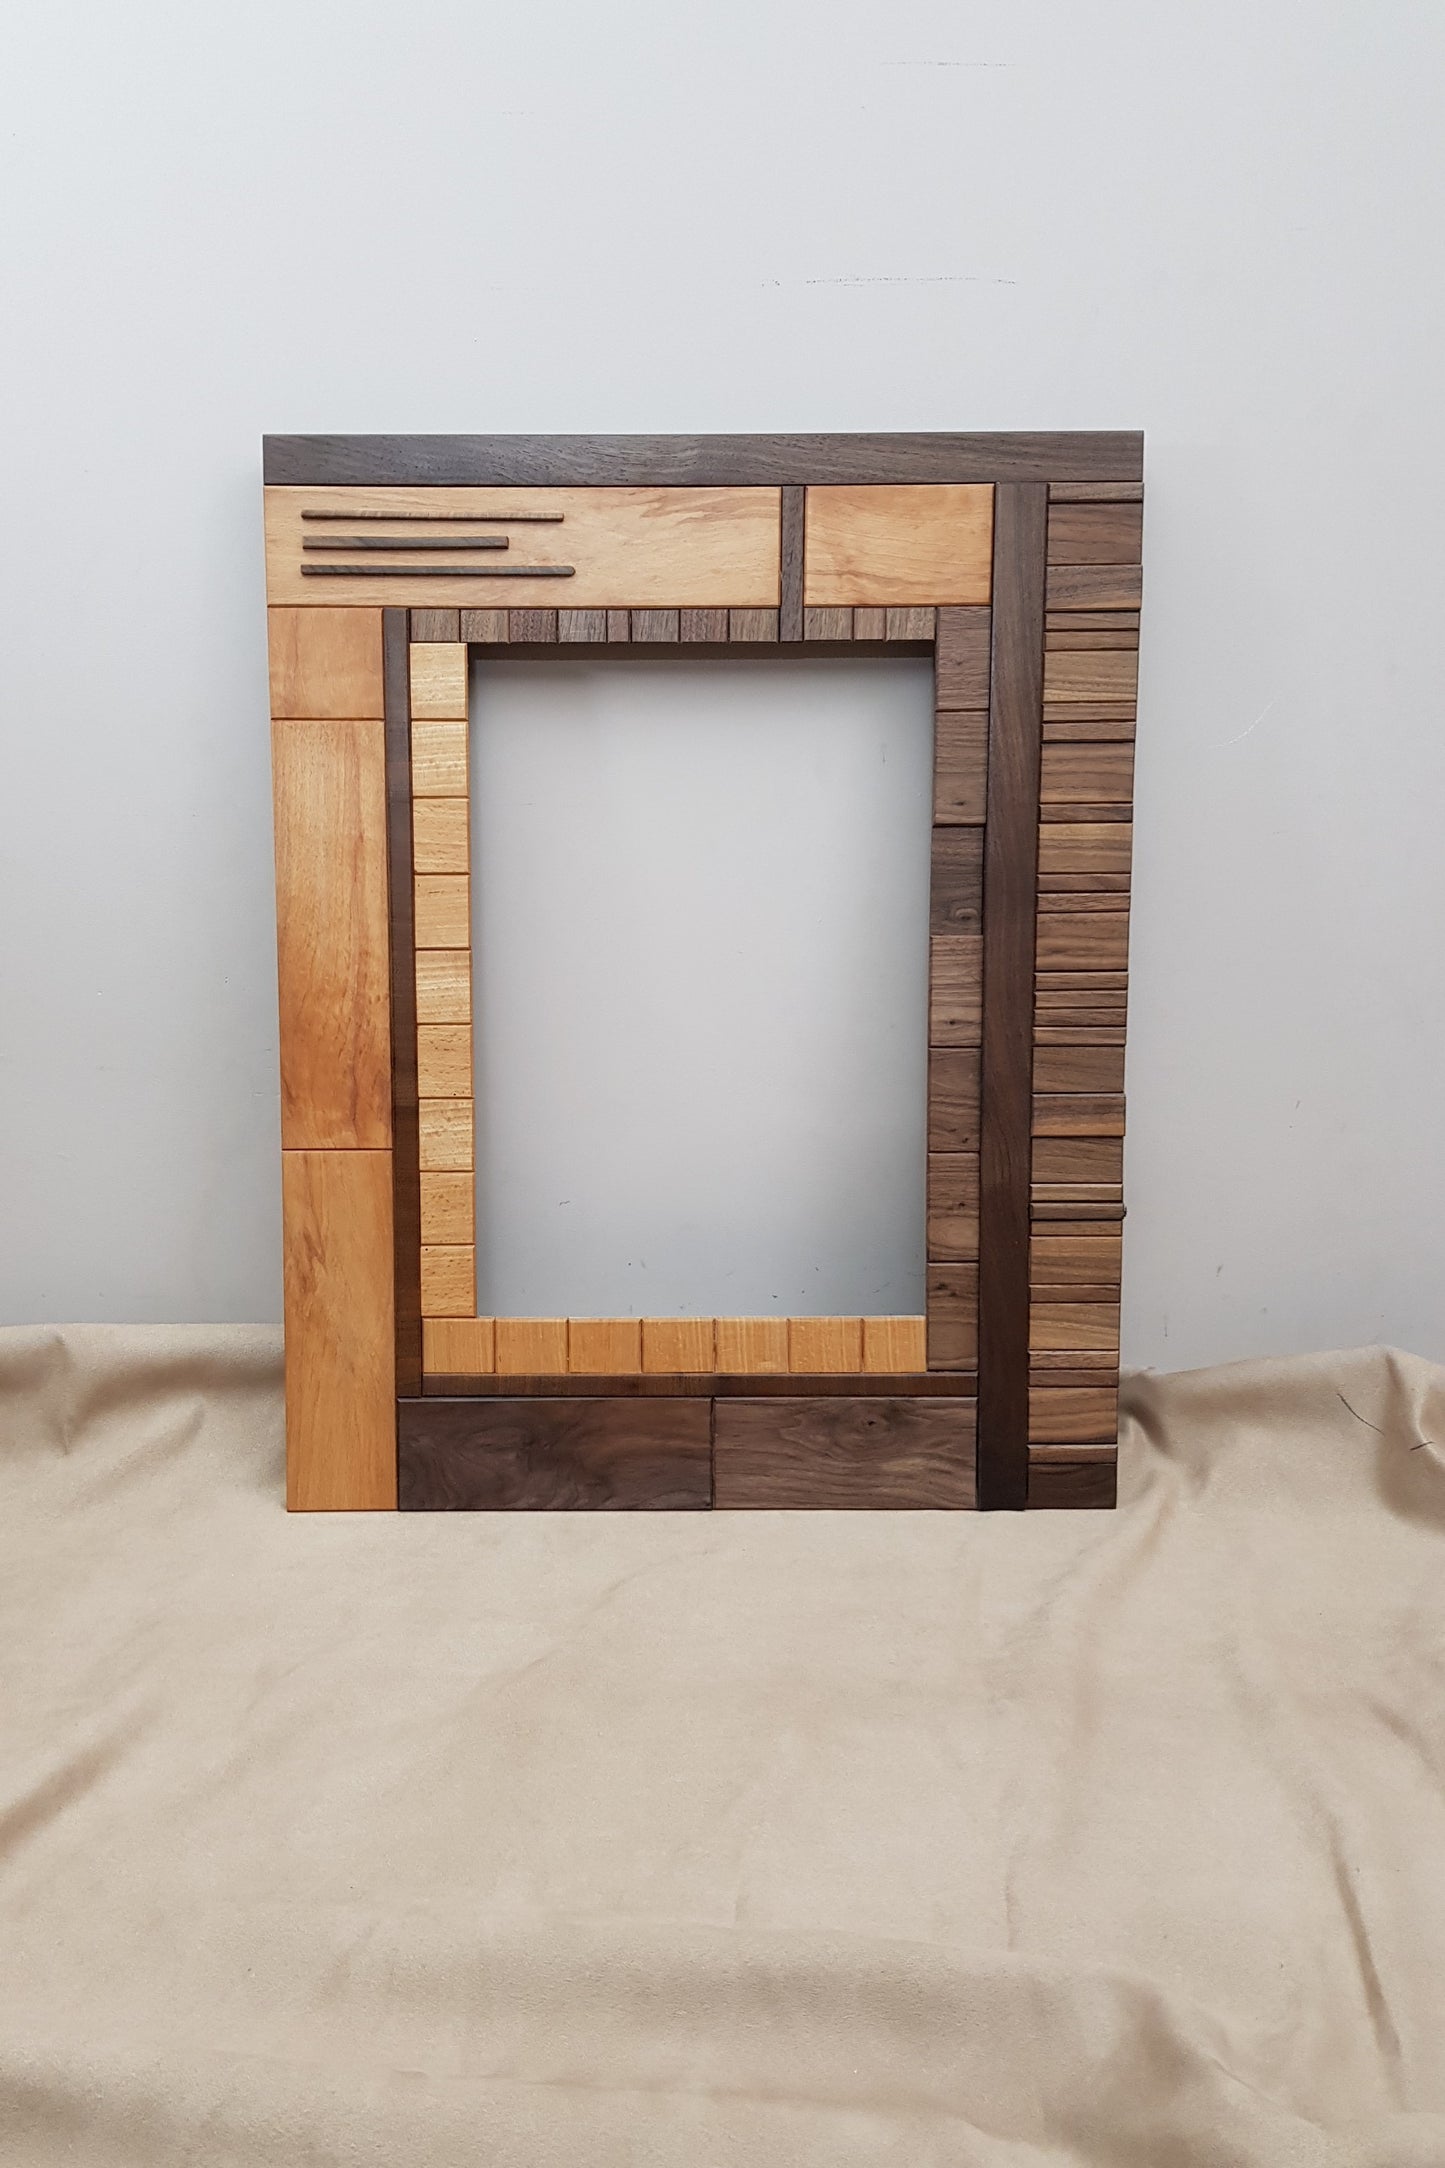 Handmade centrepiece wooden mirror frame